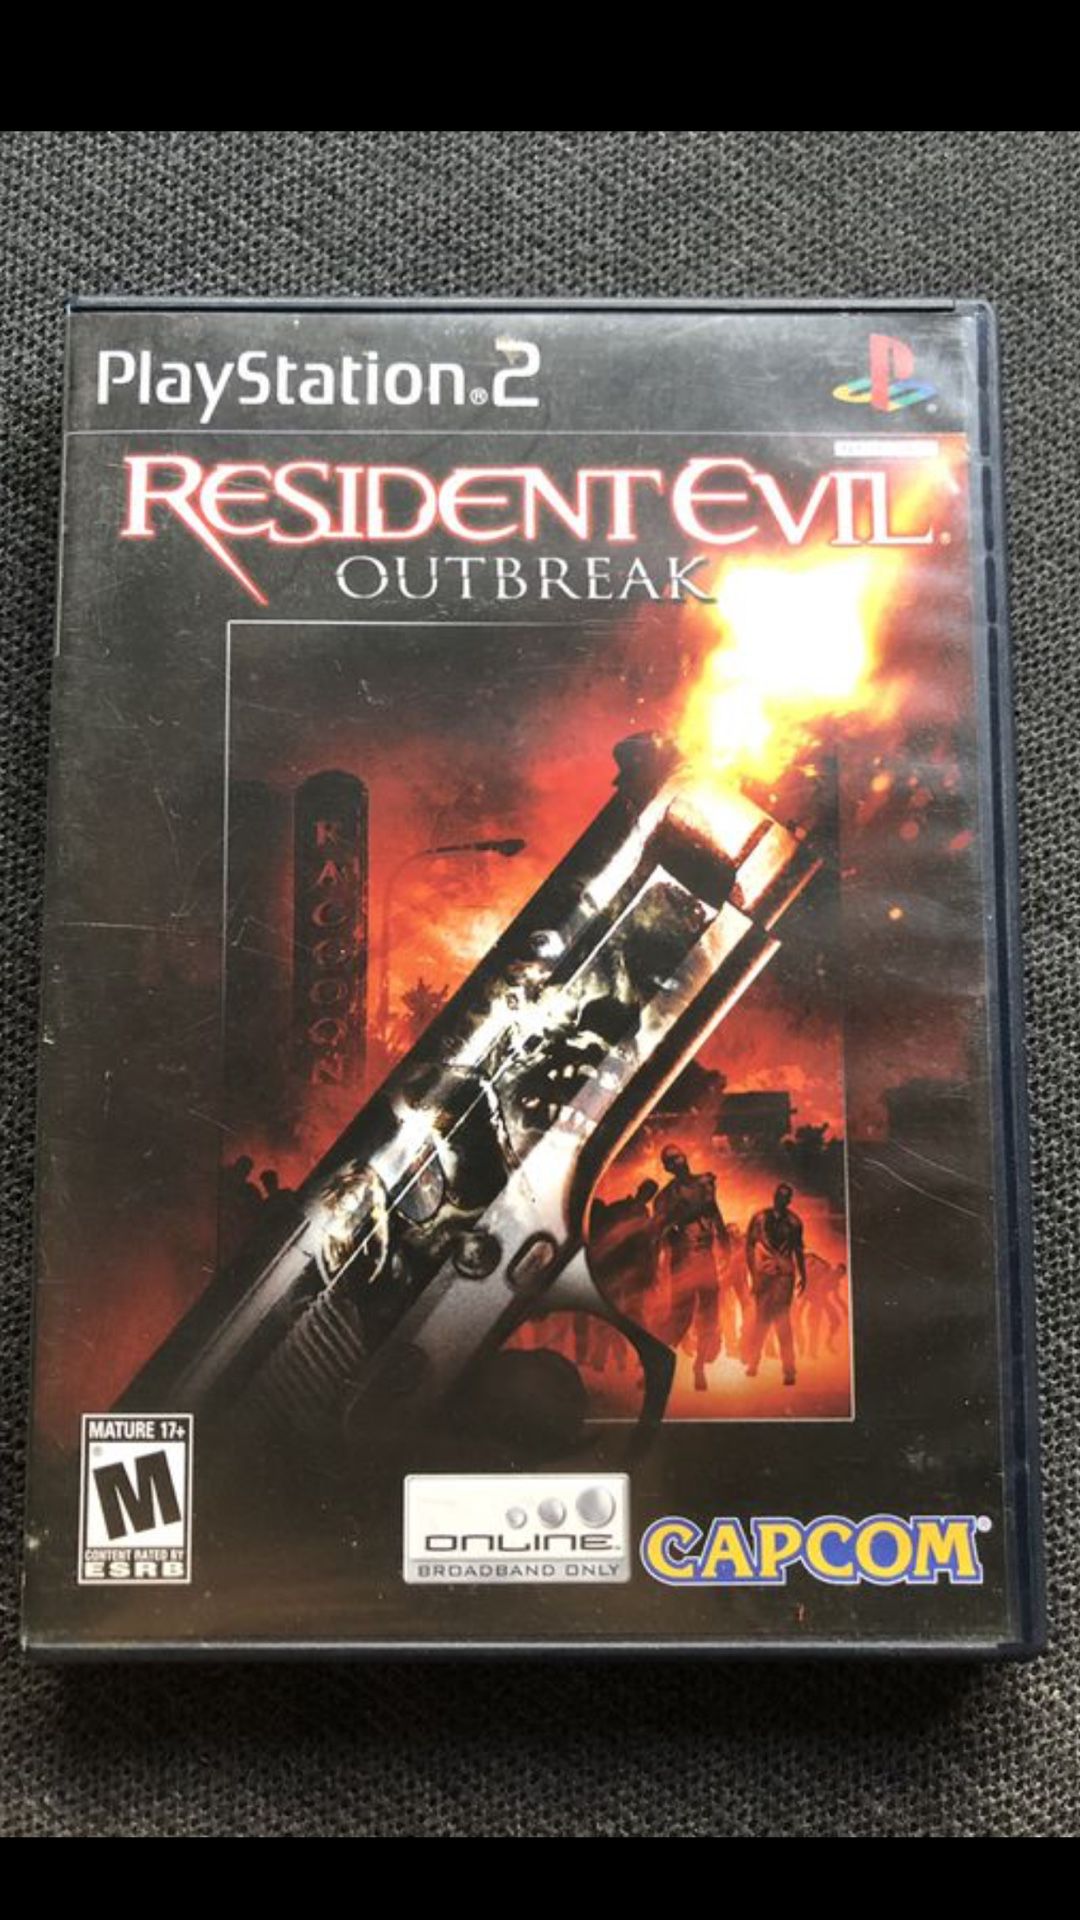 Resident evil outbreak